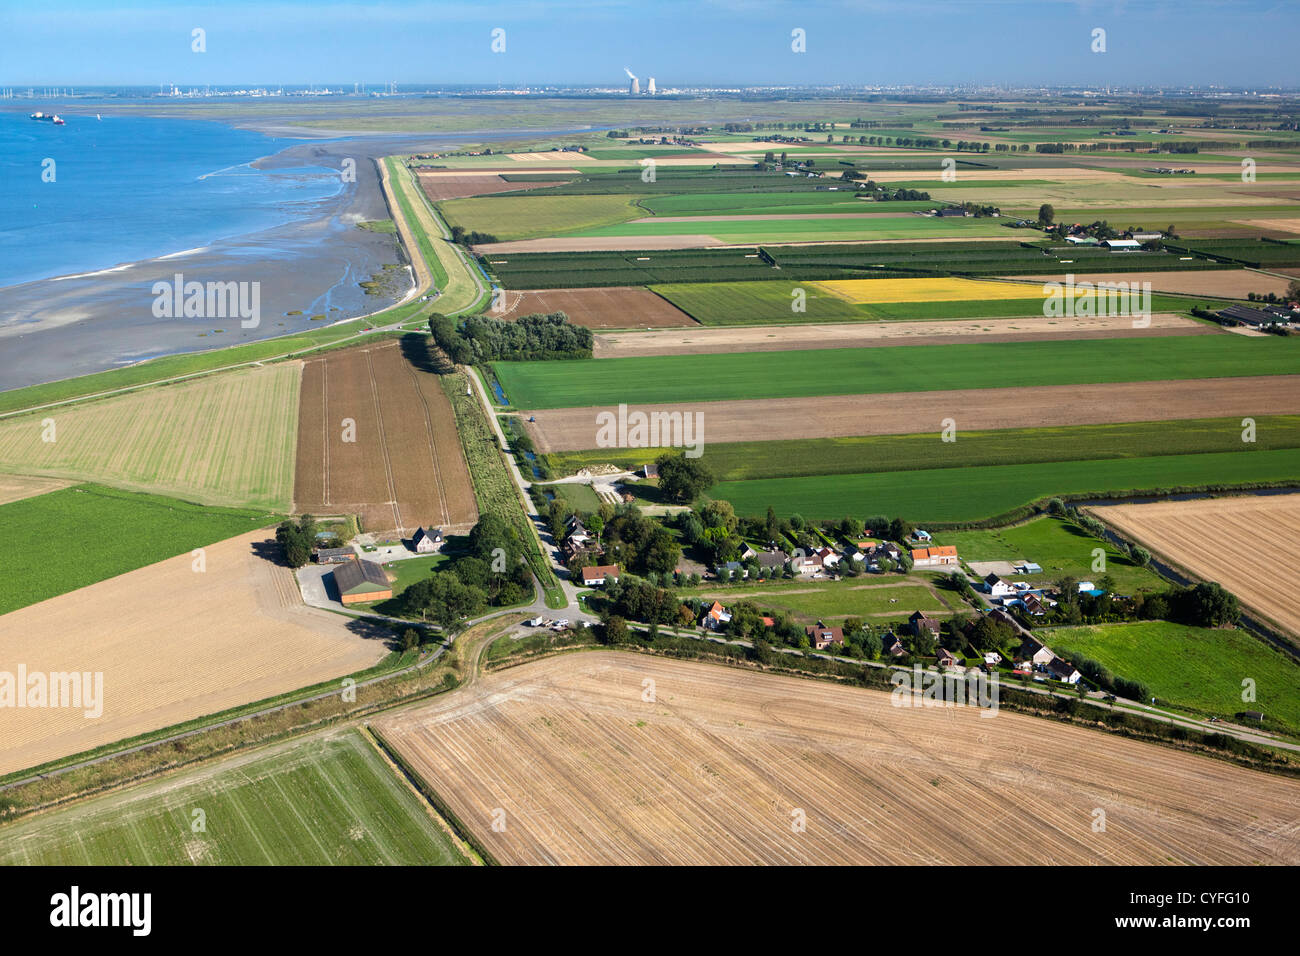 Den Niederlanden, verbessern. Weiler in der Nähe von Westerschelde Fluss. Luft. Stockfoto